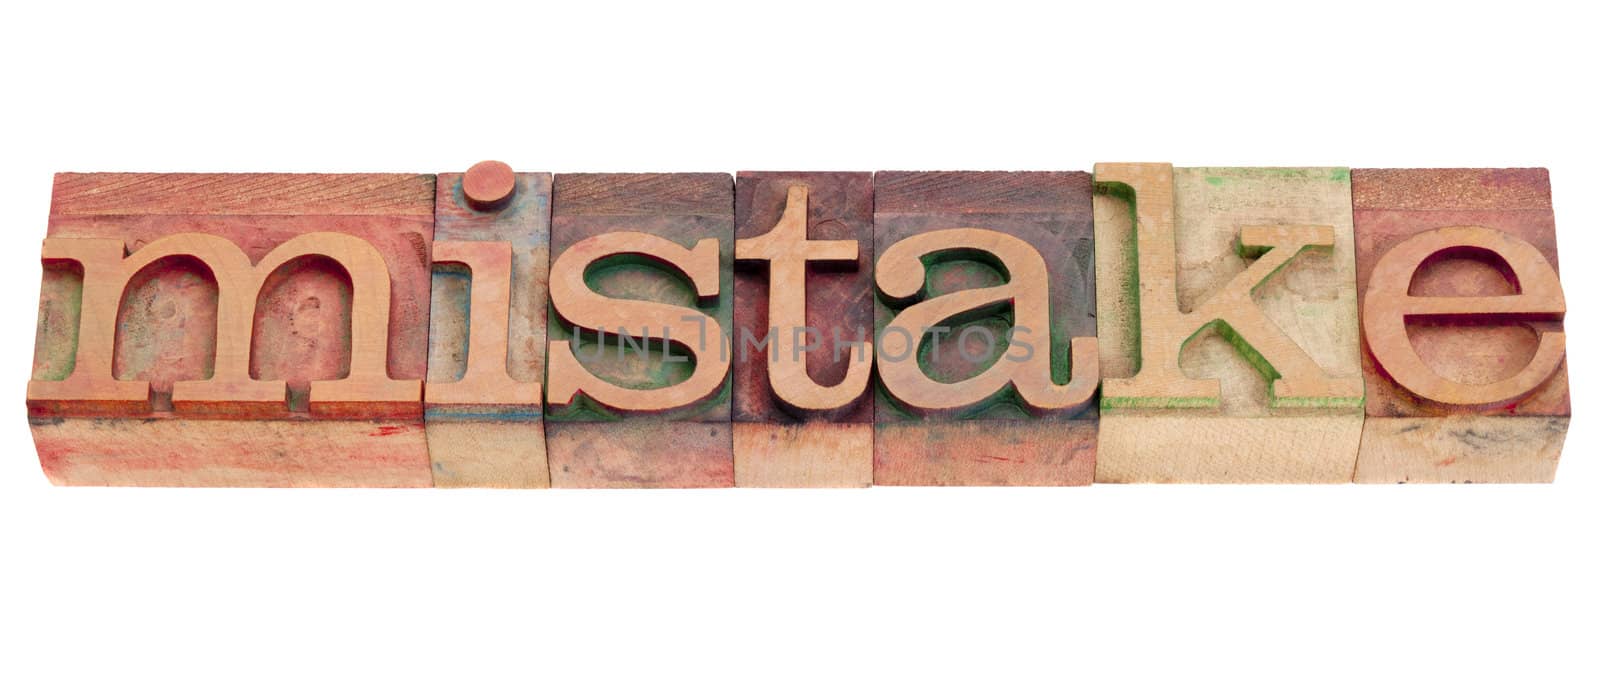 mistake in letterpress type by PixelsAway